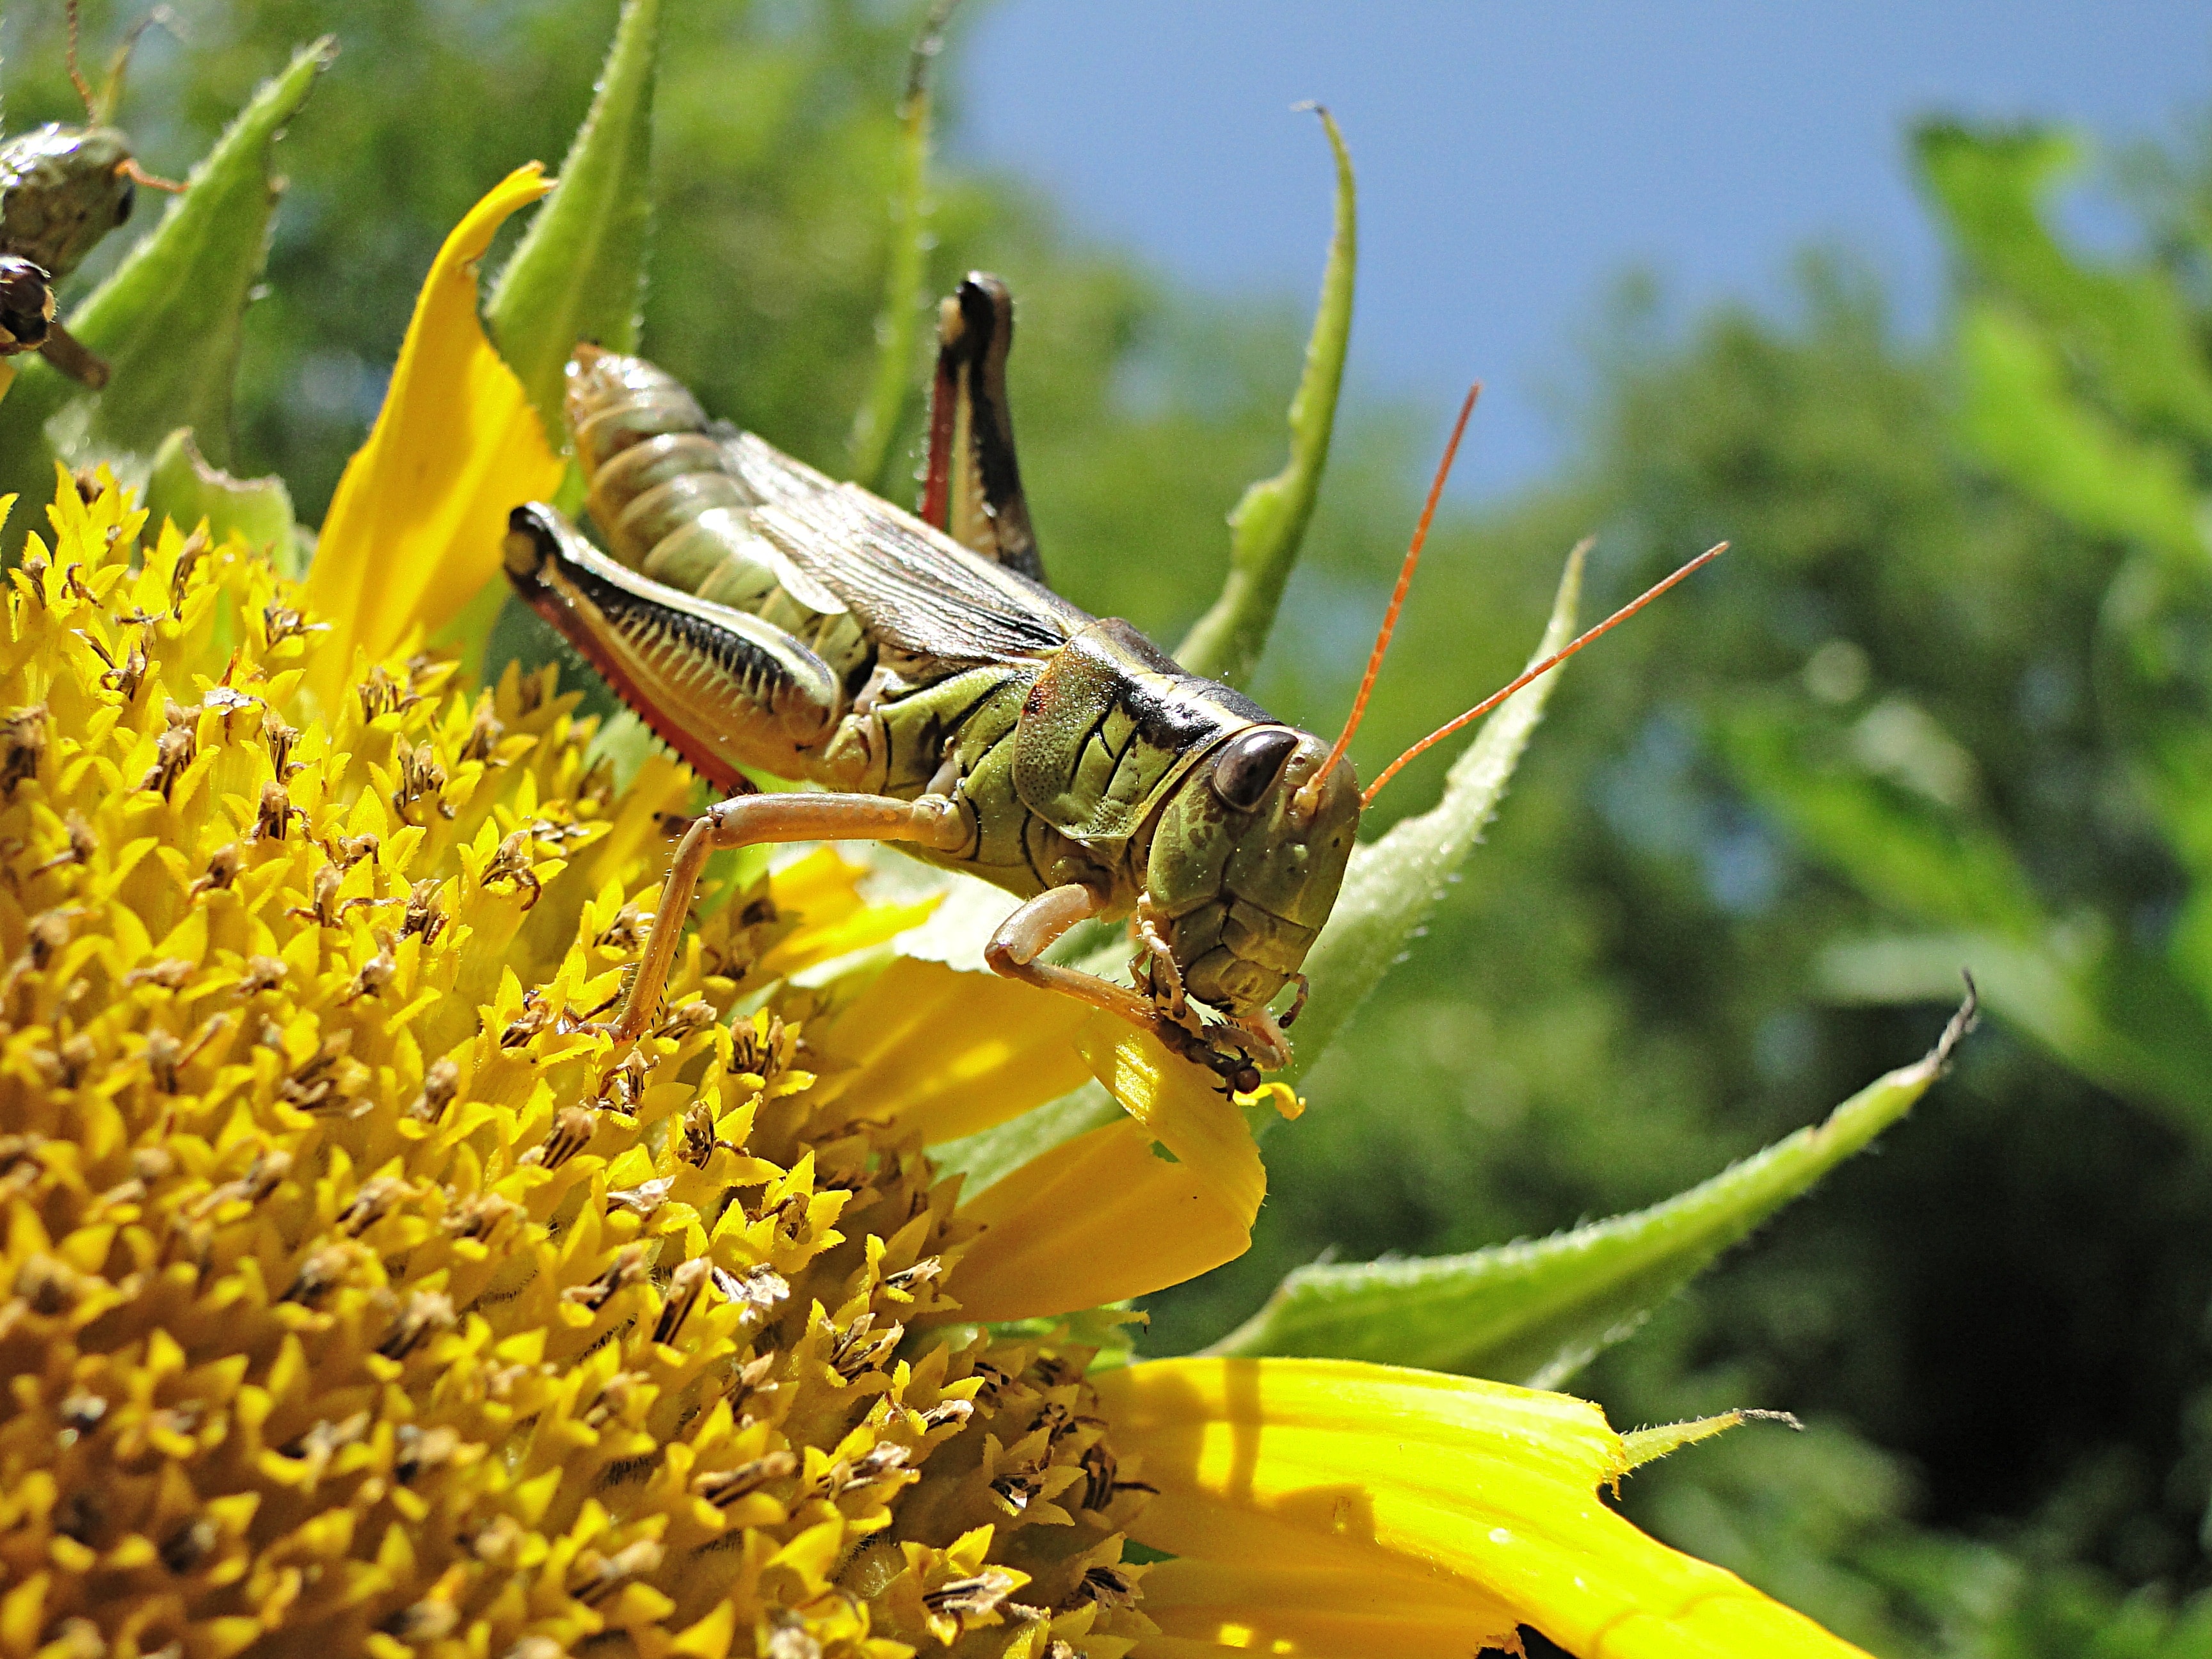 eastern lobber grasshopper on yellow flower